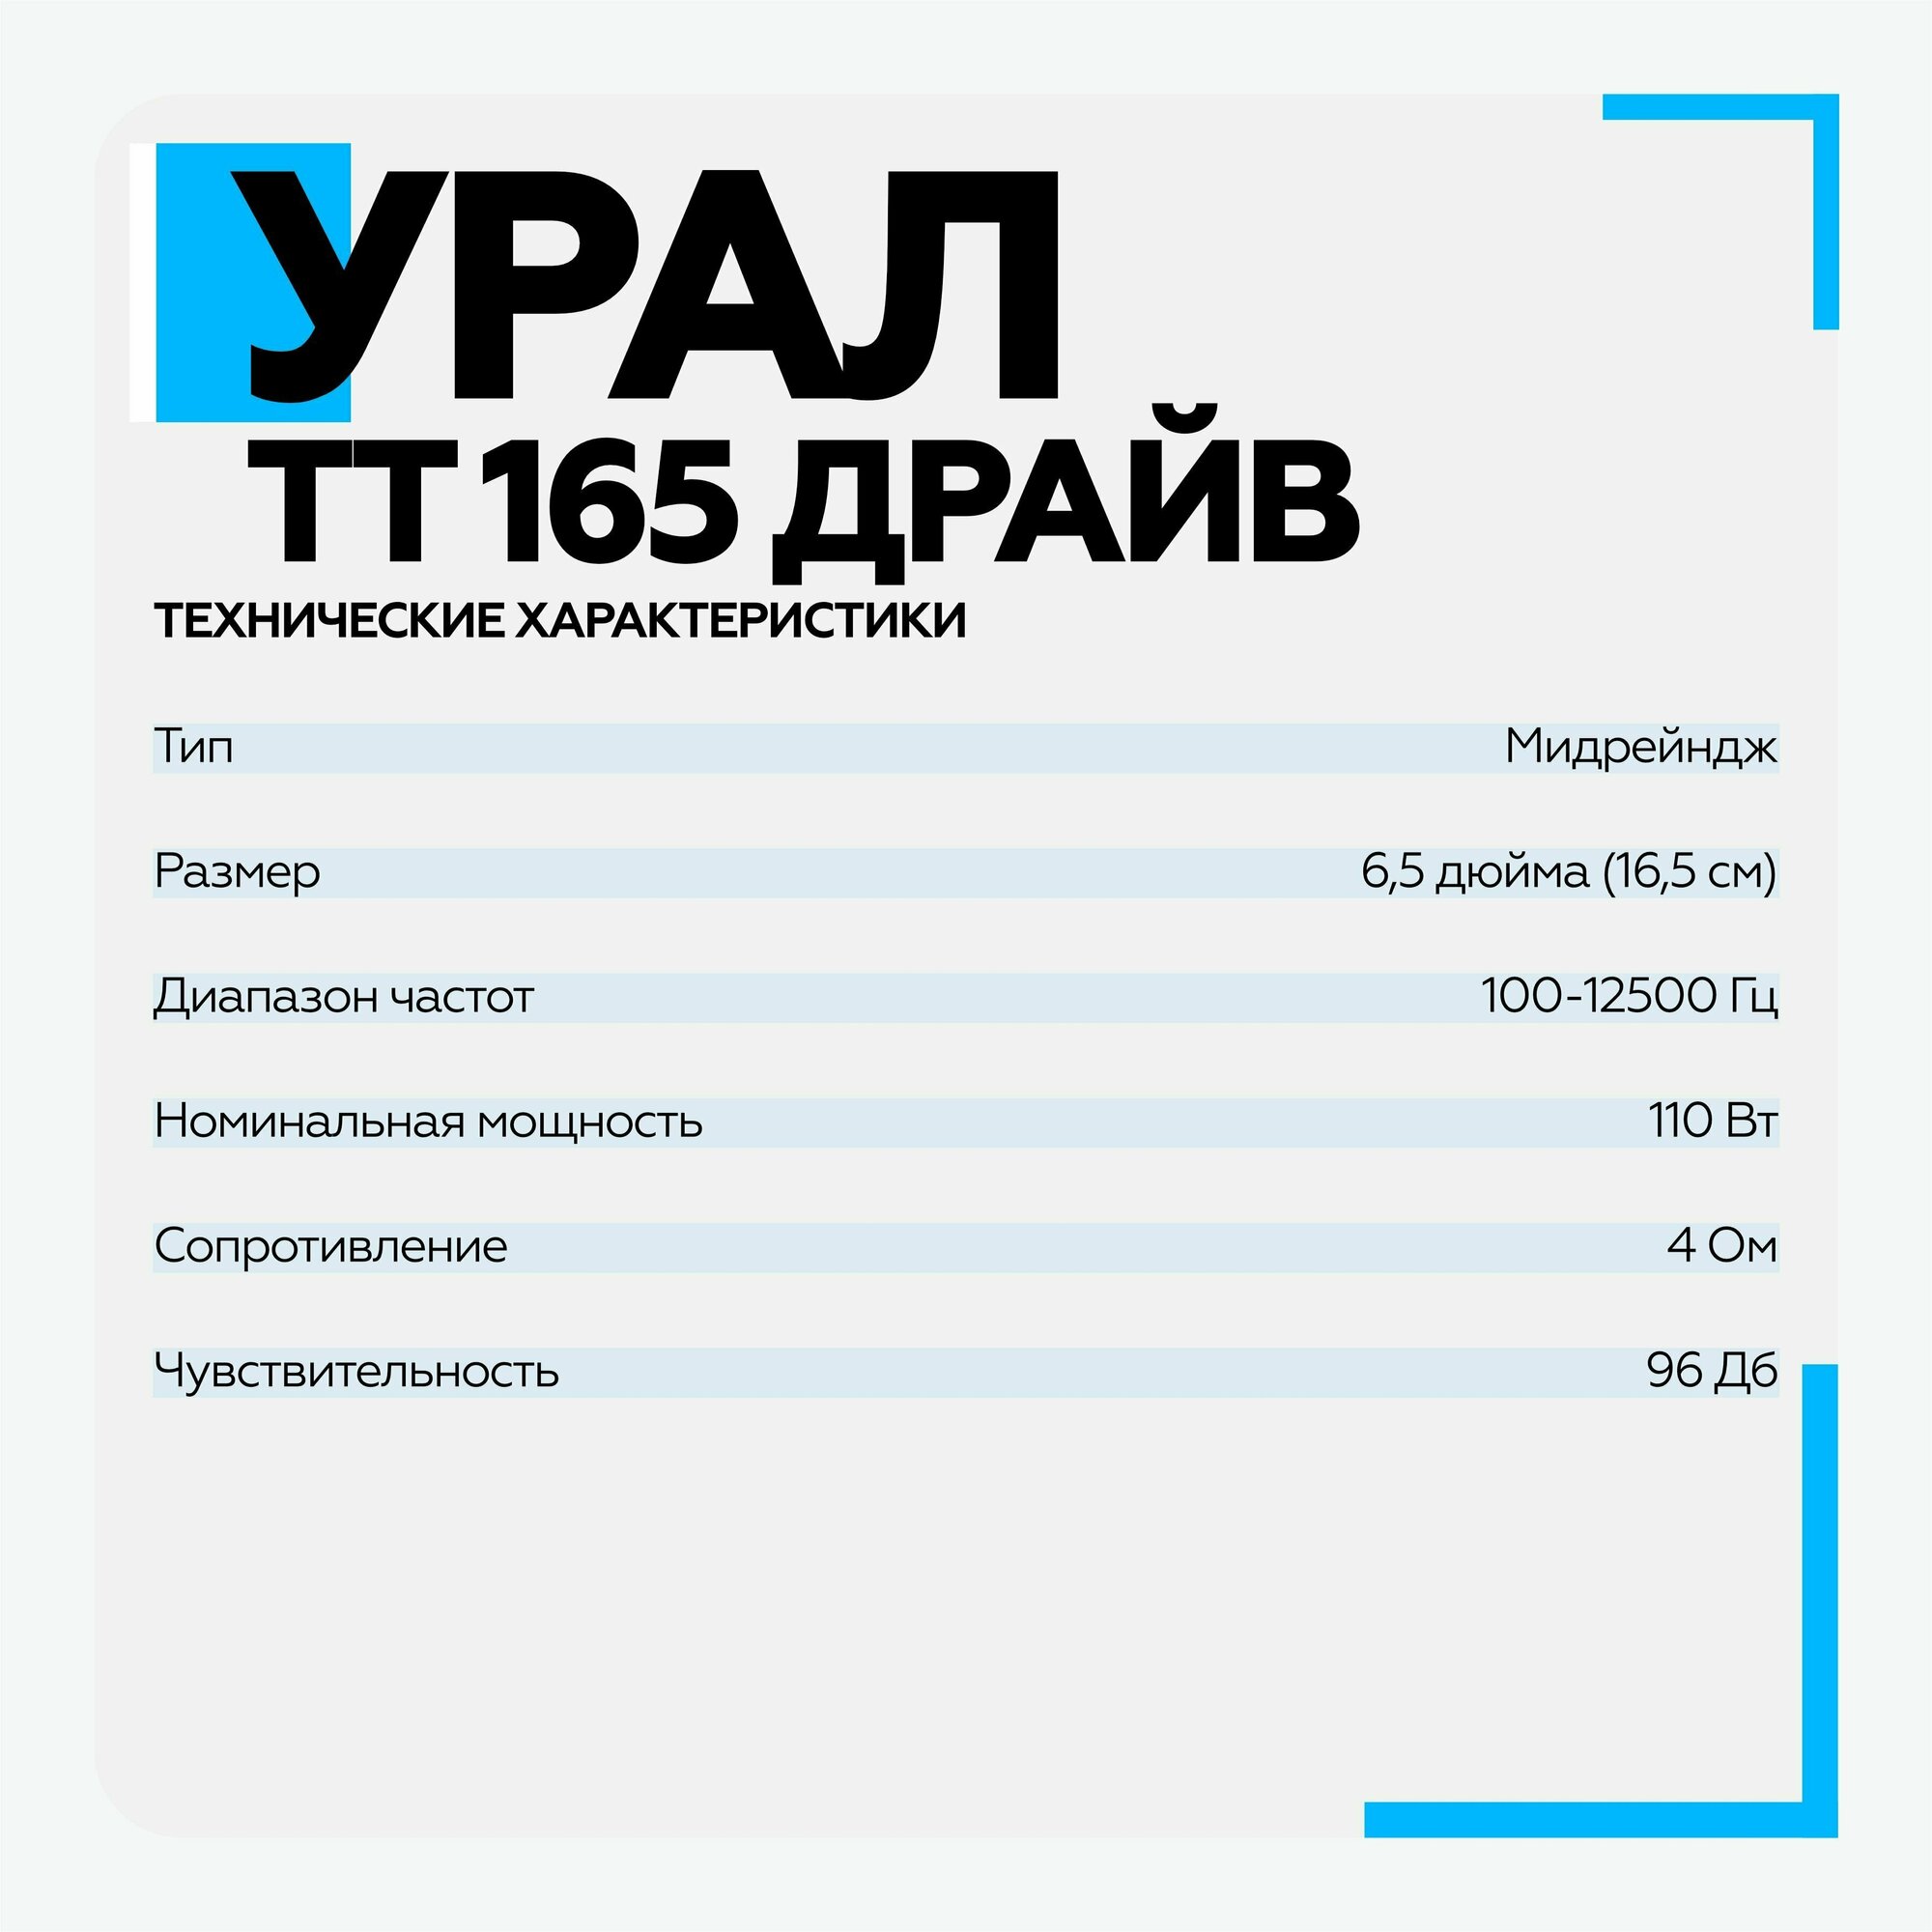 Автомобильные колонки Ural ТТ 165 ДРАЙВ (урал тт 165 драйв) - фото №10